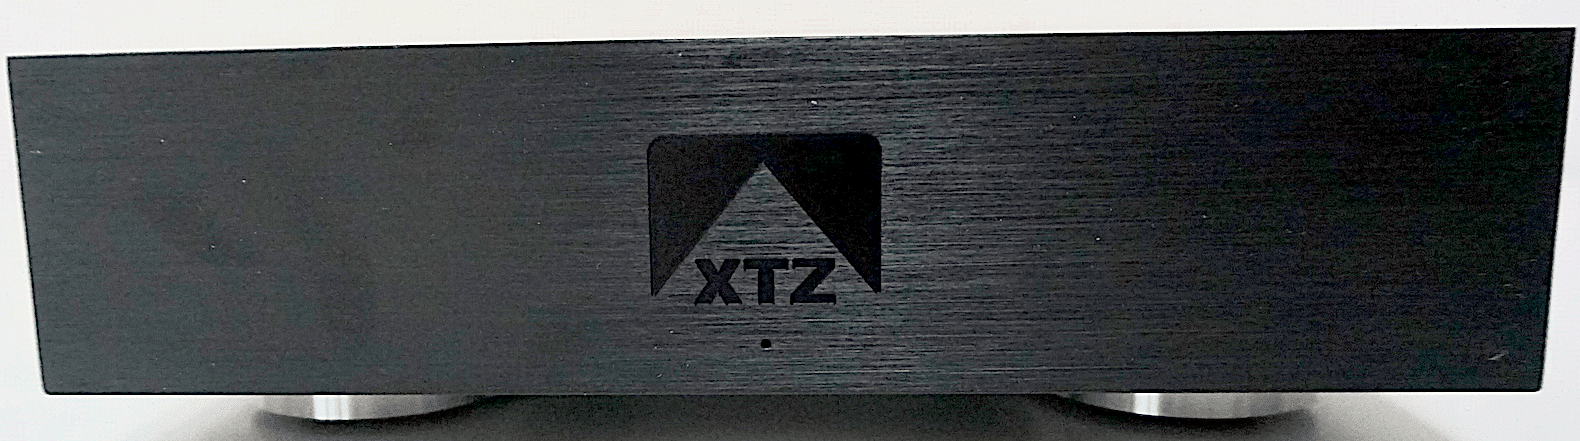 Edge A2-300 Power Amplifier From XTZ